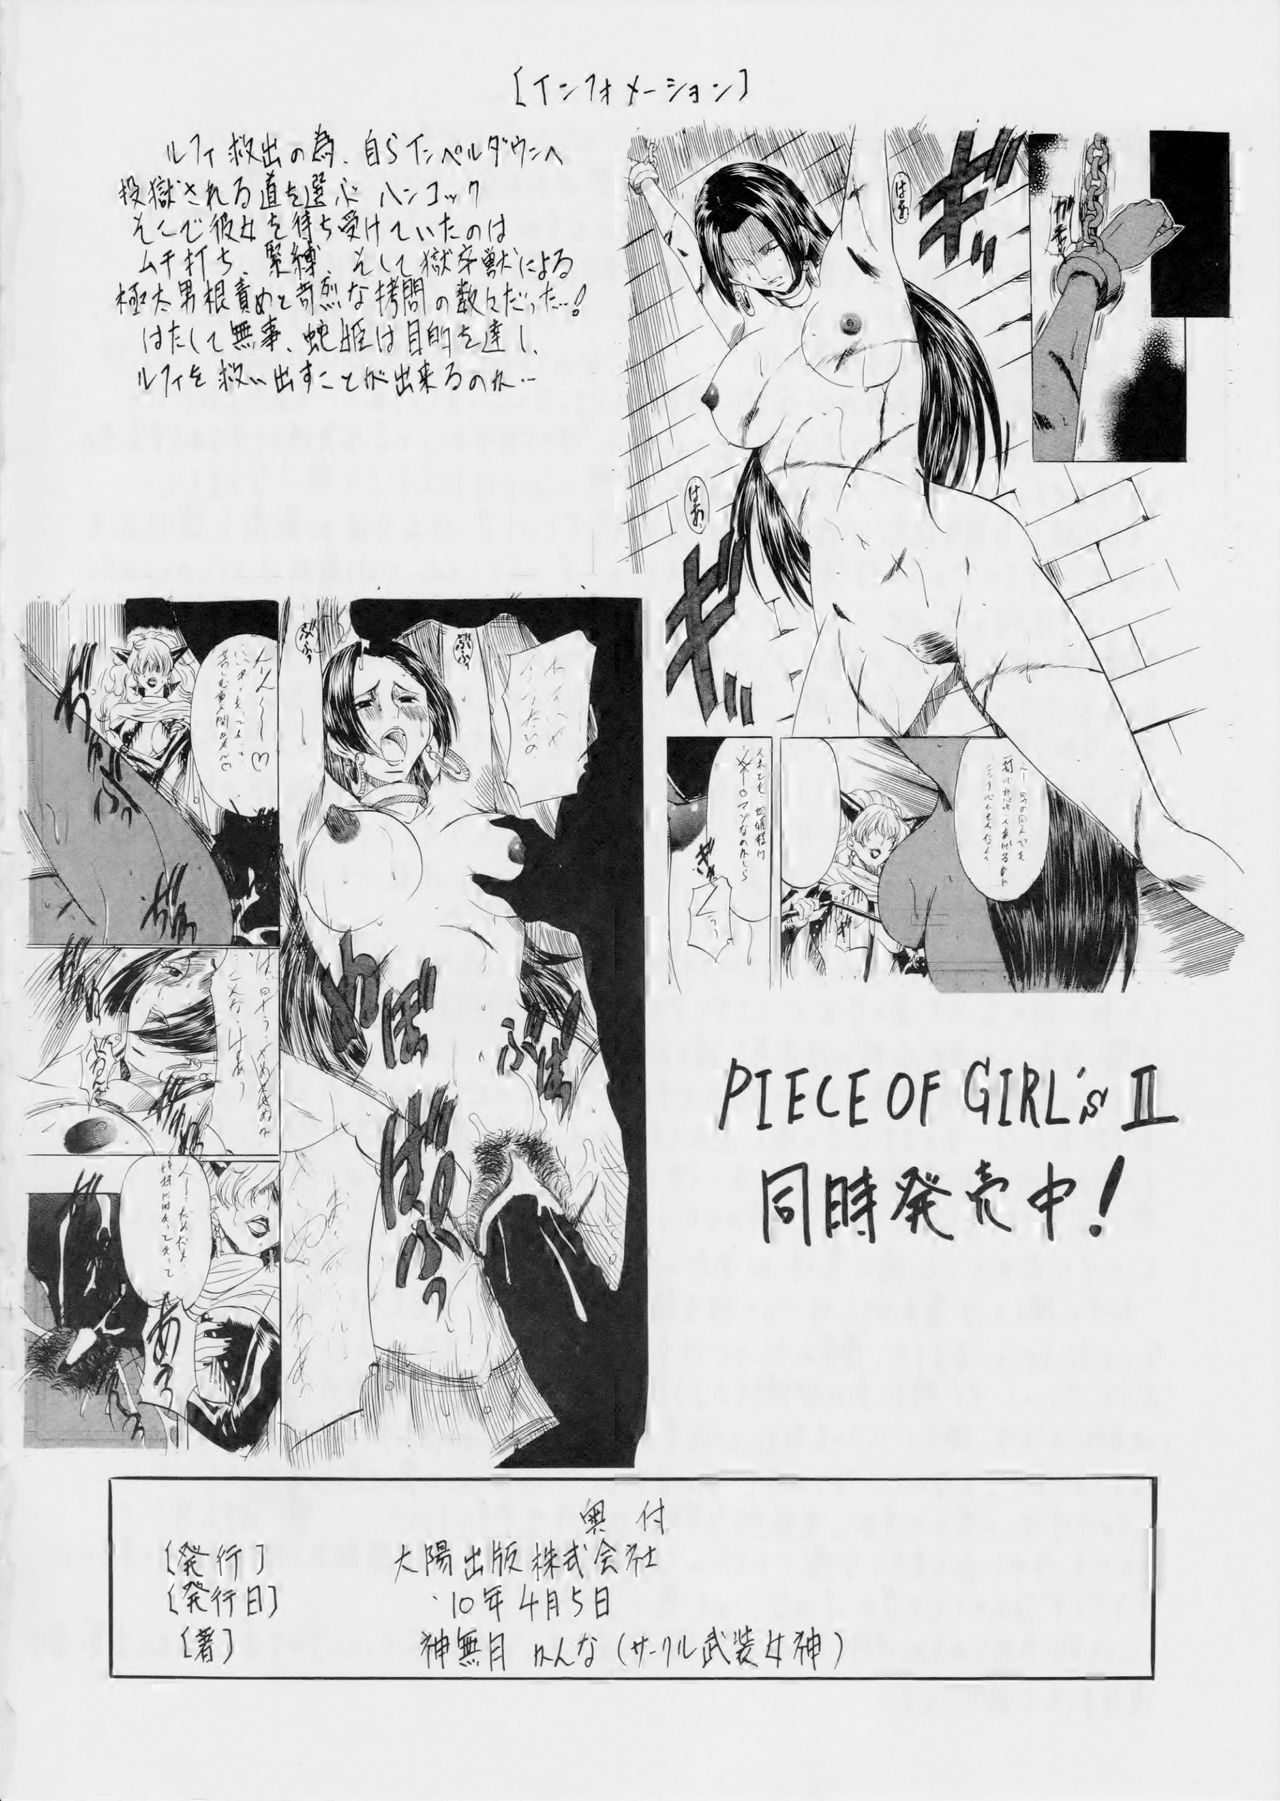 [武装女神 (神無月かんな)] PIECE OF GIRL'S (ワンピース)